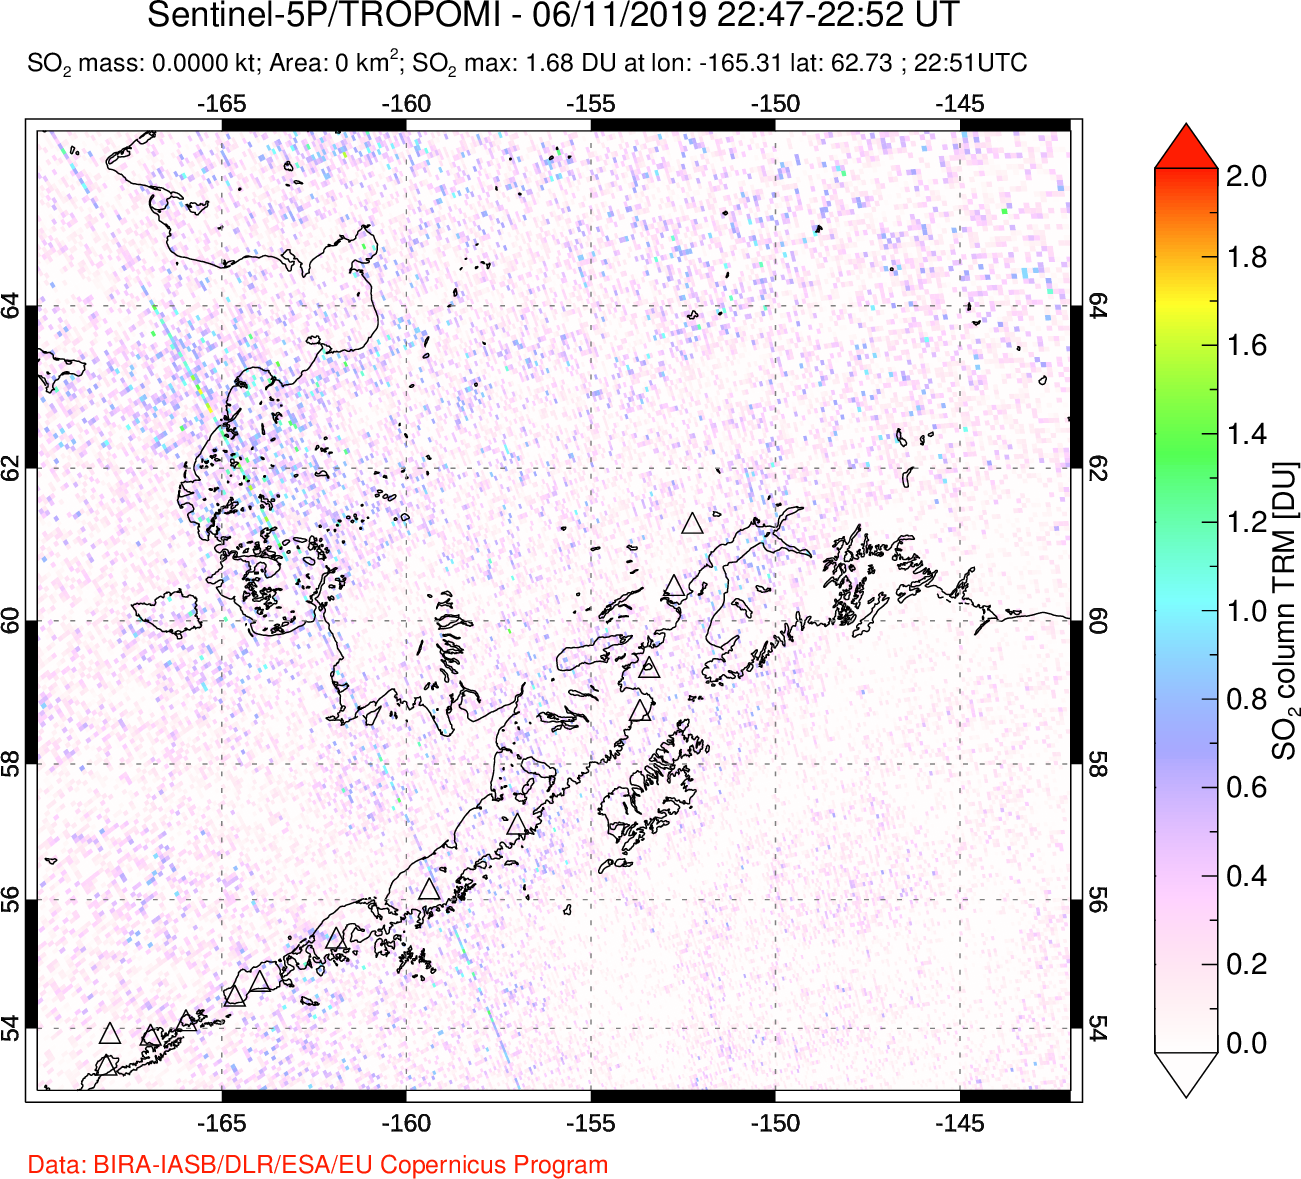 A sulfur dioxide image over Alaska, USA on Jun 11, 2019.